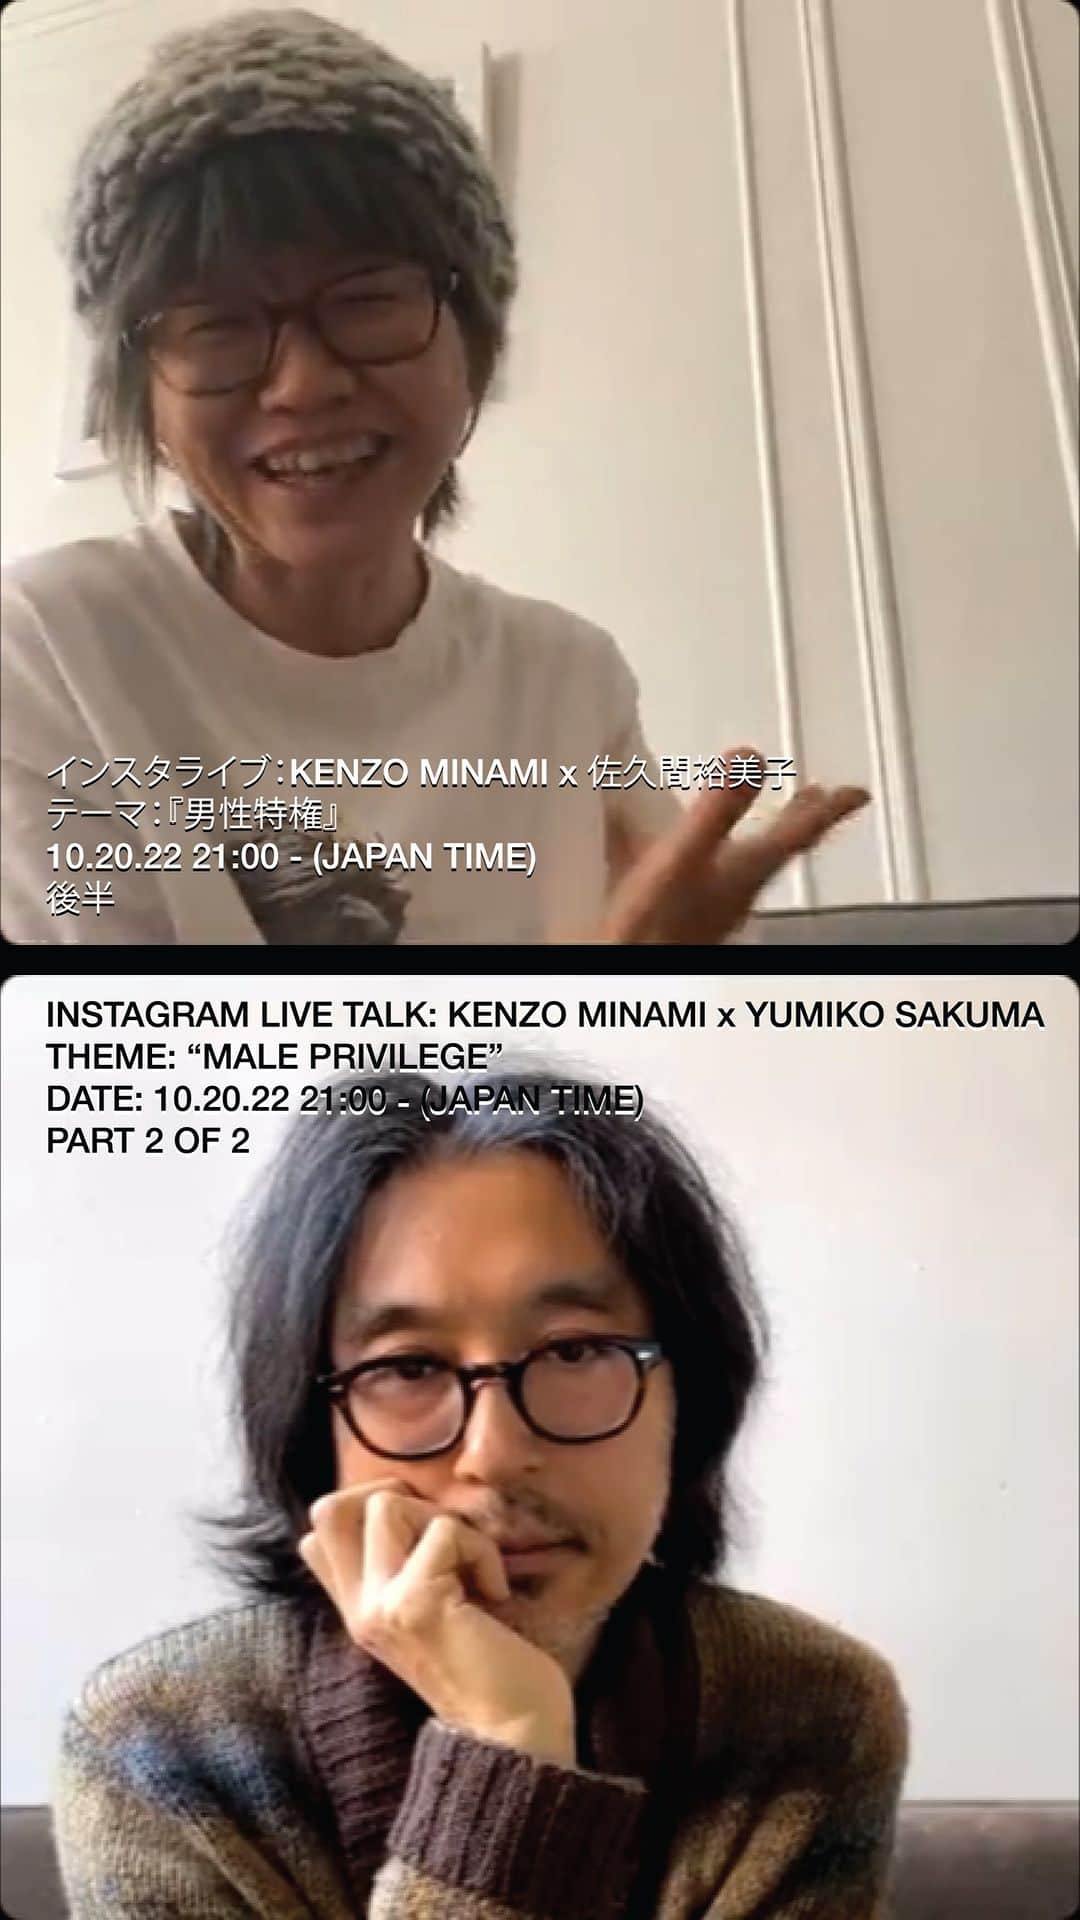 ケンゾーミナミのインスタグラム：「書籍『We Act! #3』@sakumagcoop 特別企画インスタライブ　vol.2  KENZO MINAMI x 佐久間裕美子 テーマ:『男性特権』 10/20/22 21:00 - (日本時間) 後半  Instagram Live Talk: KENZO MINAMI x @yumikosakuma THEME: “MALE PRIVILEGE” Part 2 of 2  (インスタの動画の上限が60分なので2部に分かれていますが) 100分のフルバージョンはこちらか、もしくはバイオのリンクから。  FULL VERSION: vimeo.com/763211451  (前半 / Part 1 of 2 - https://www.instagram.com/tv/CkFNLwVJXZK/?igshid=YmMyMTA2M2Y=)  #sakumag #男性特権 #maleprivilege #yumikosakuma #佐久間裕美子 #kenzominami」